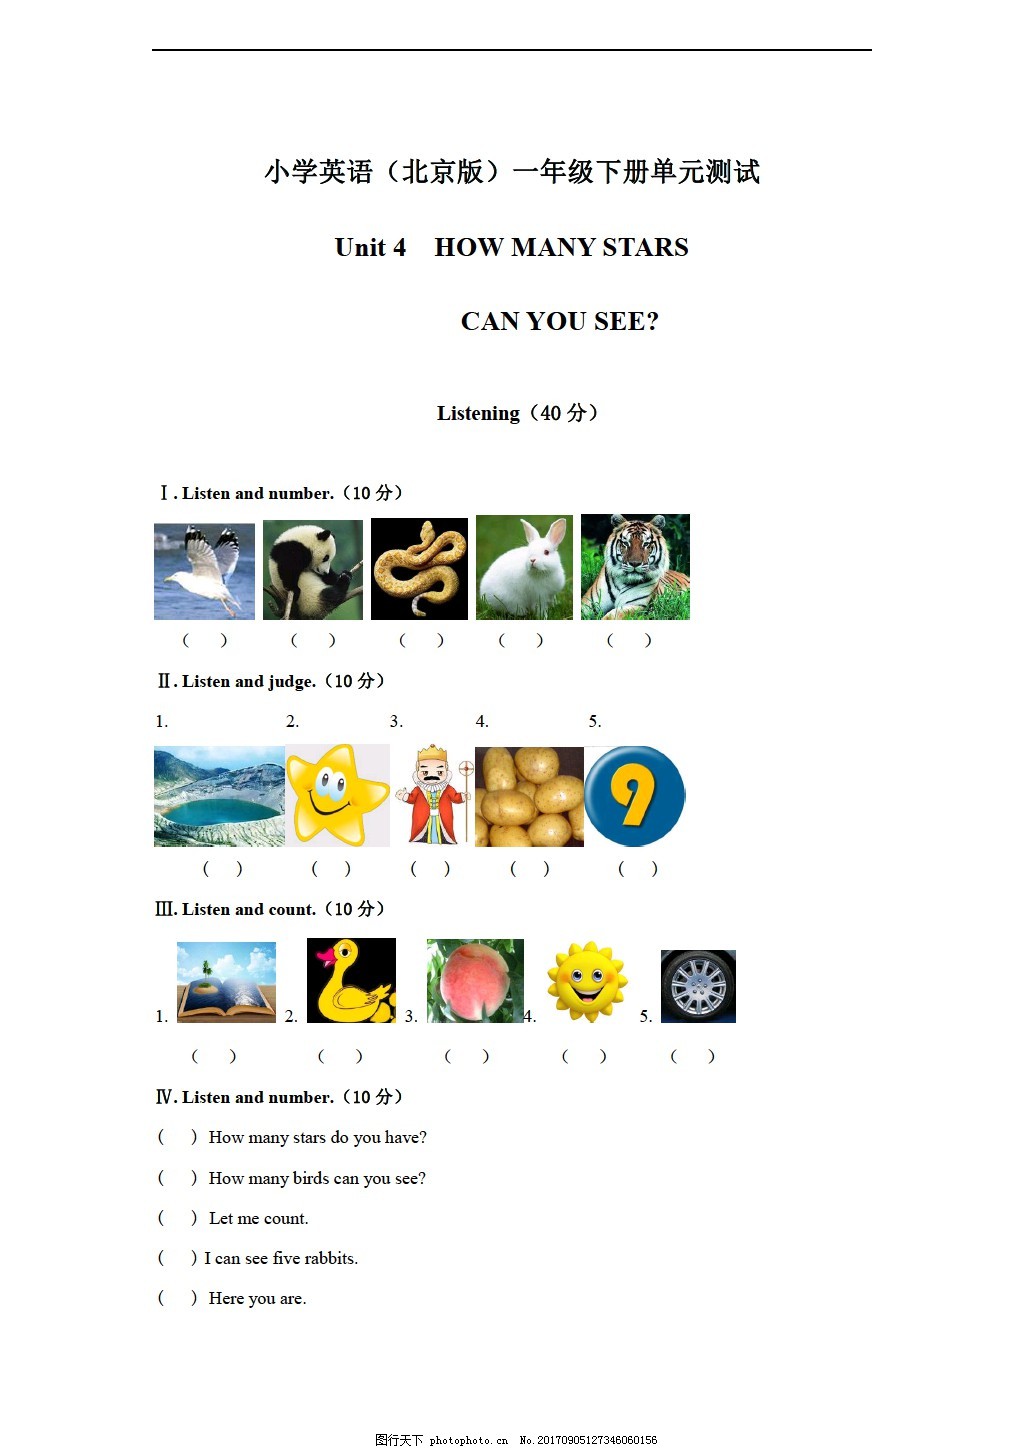 一年级下英语 下册unit 4 How Many Stars Can You See 单元测试 含听力音频与答案 图片 小学一年级 小学一年级 图行天下素材网